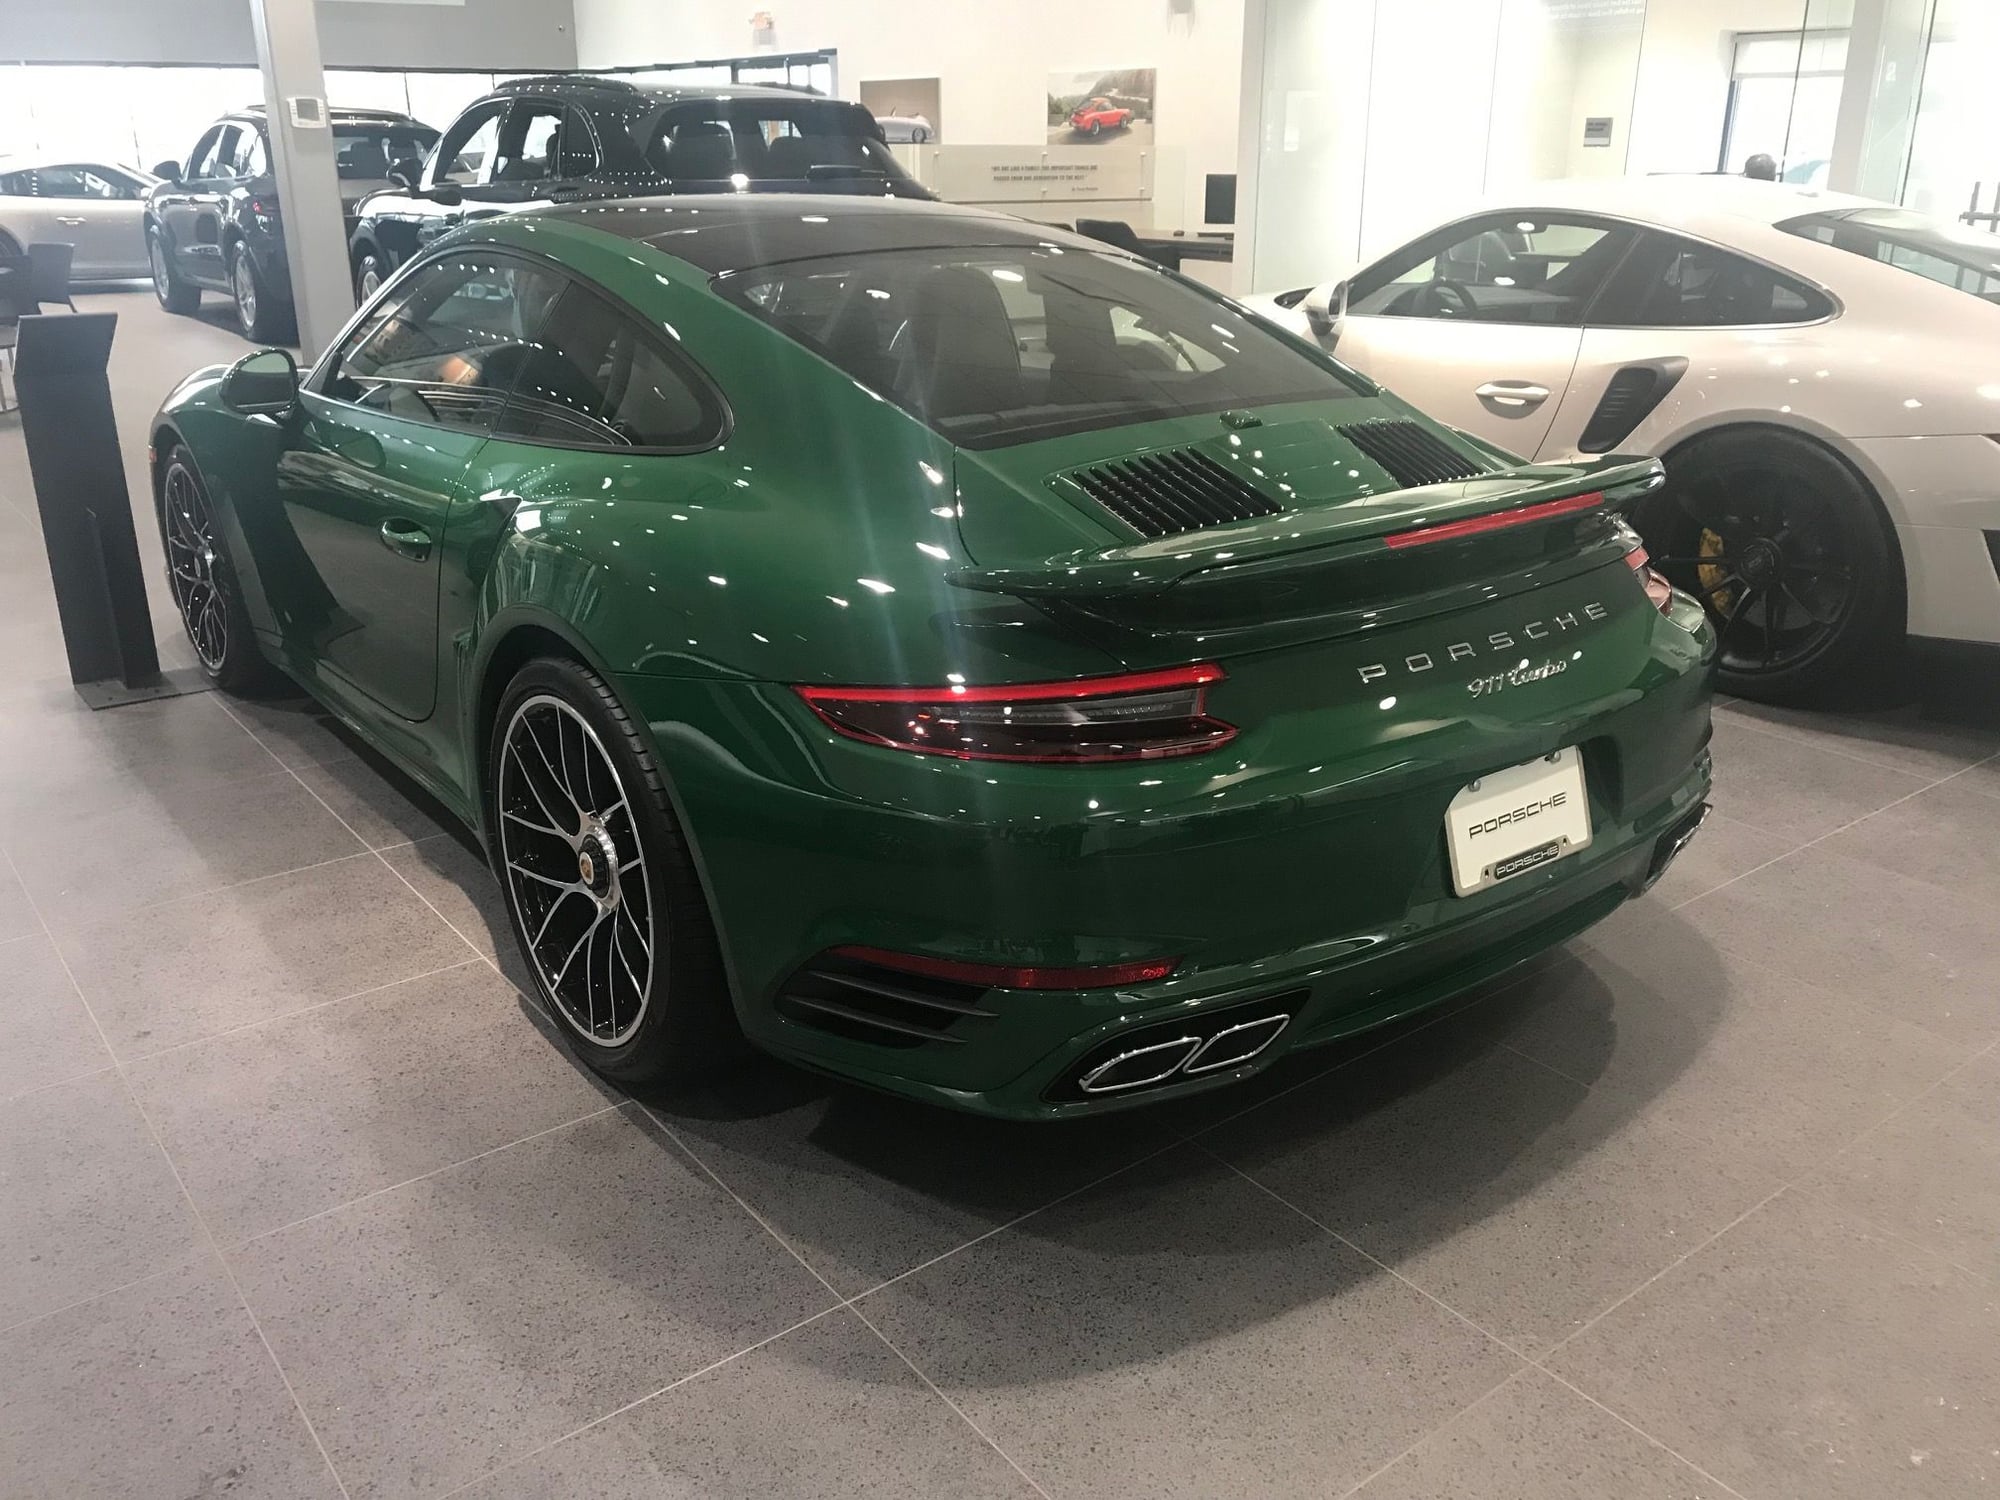 2019 Porsche 911 Turbo PTS Irish Green - Rennlist - Porsche Discussion ...